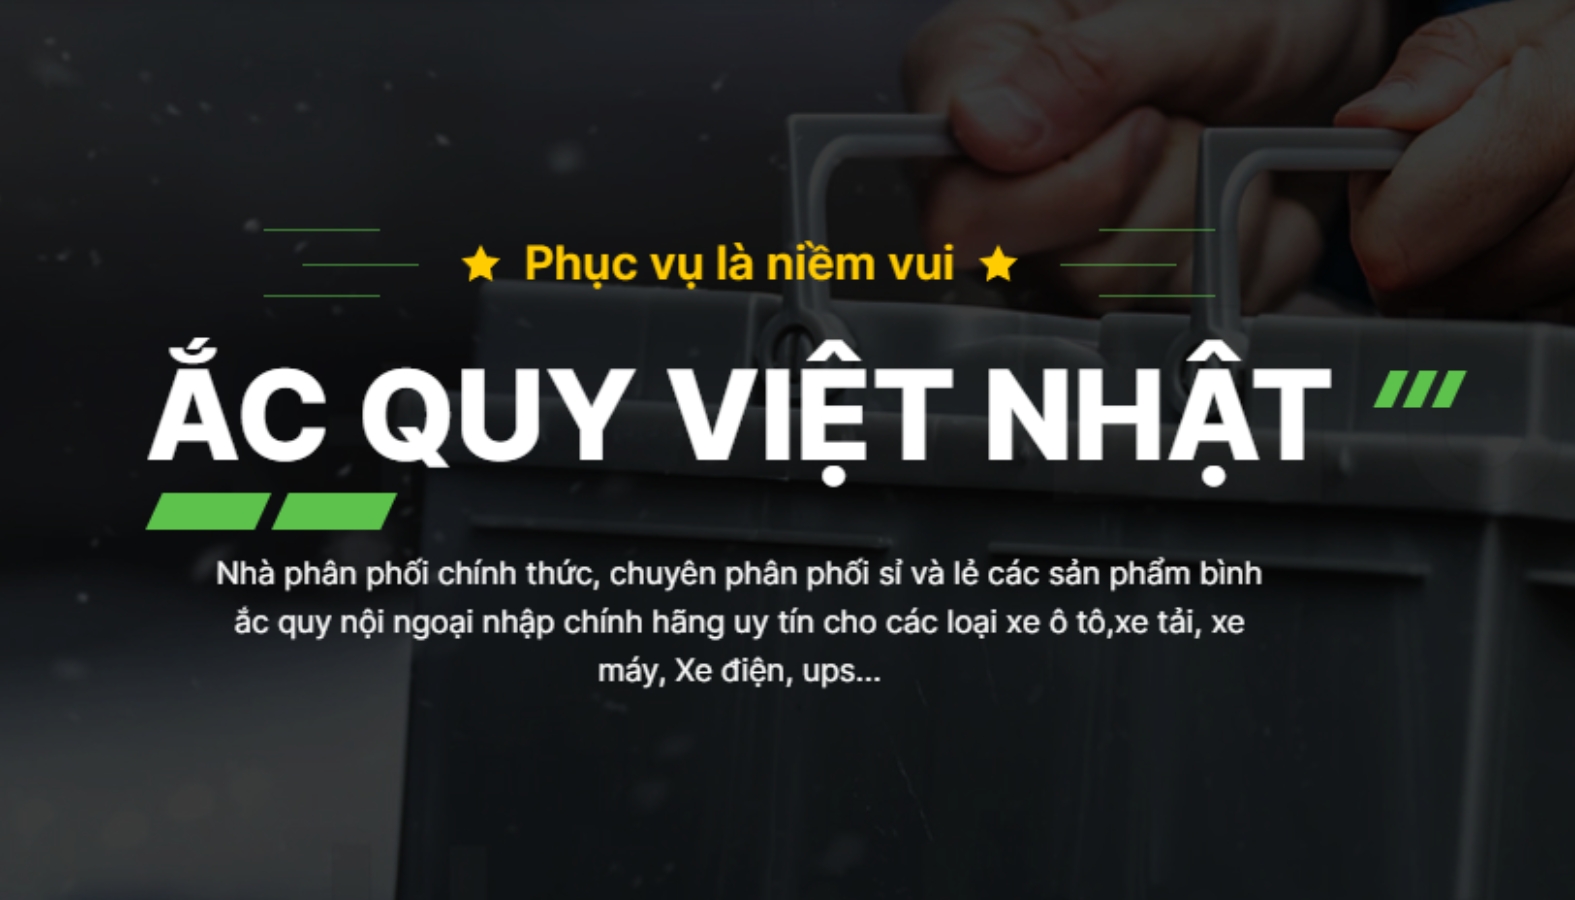 Mua ắc quy nhập khẩu tại Việt Nhật